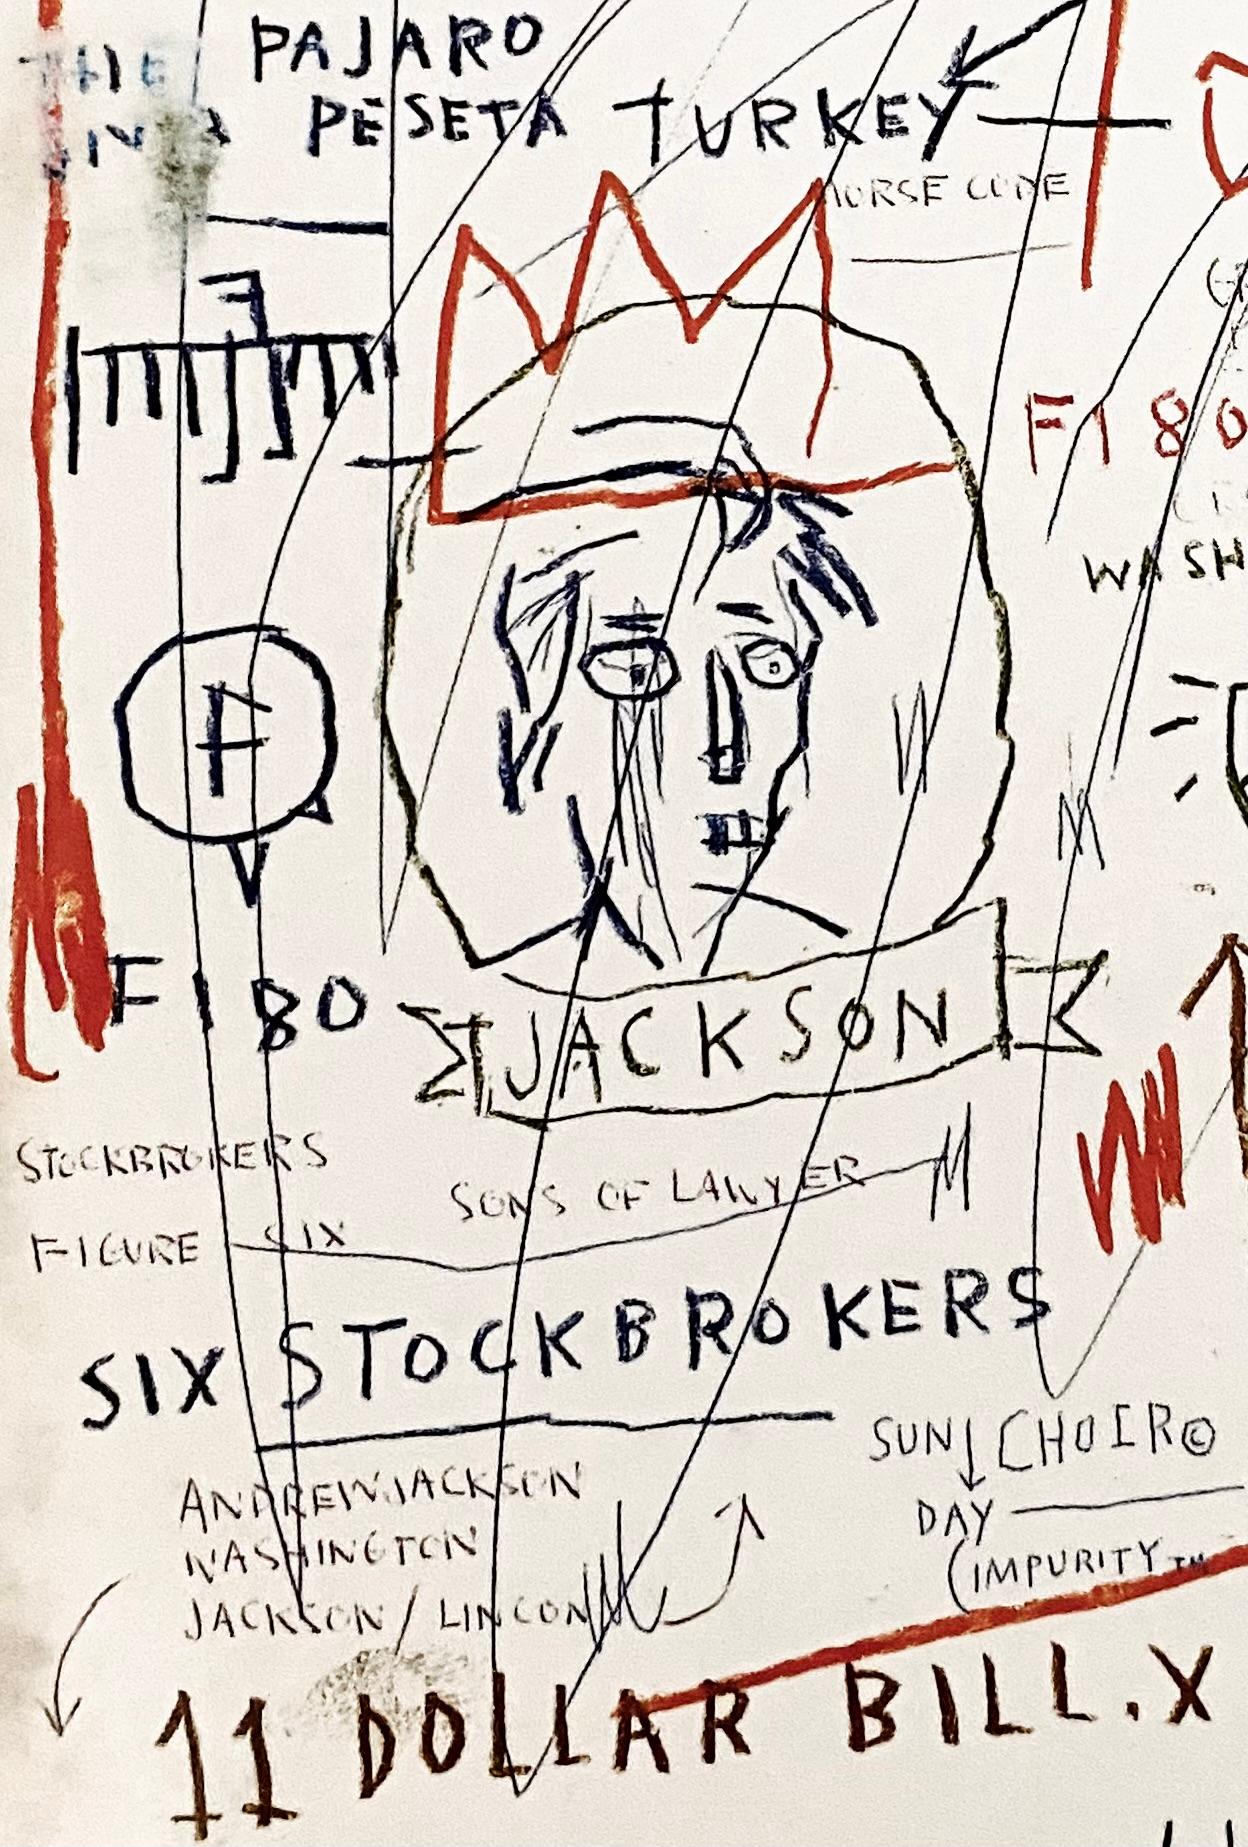 Jean-Michel Basquiat The Paris Review :
1989 Livre The Paris Review, avec la couverture de Jean-Michel Basquiat. L'imagerie présente une reproduction du Jackson (sans titre) de Basquiat, datant de 1982.

Lithographie offset sur livre d'art double